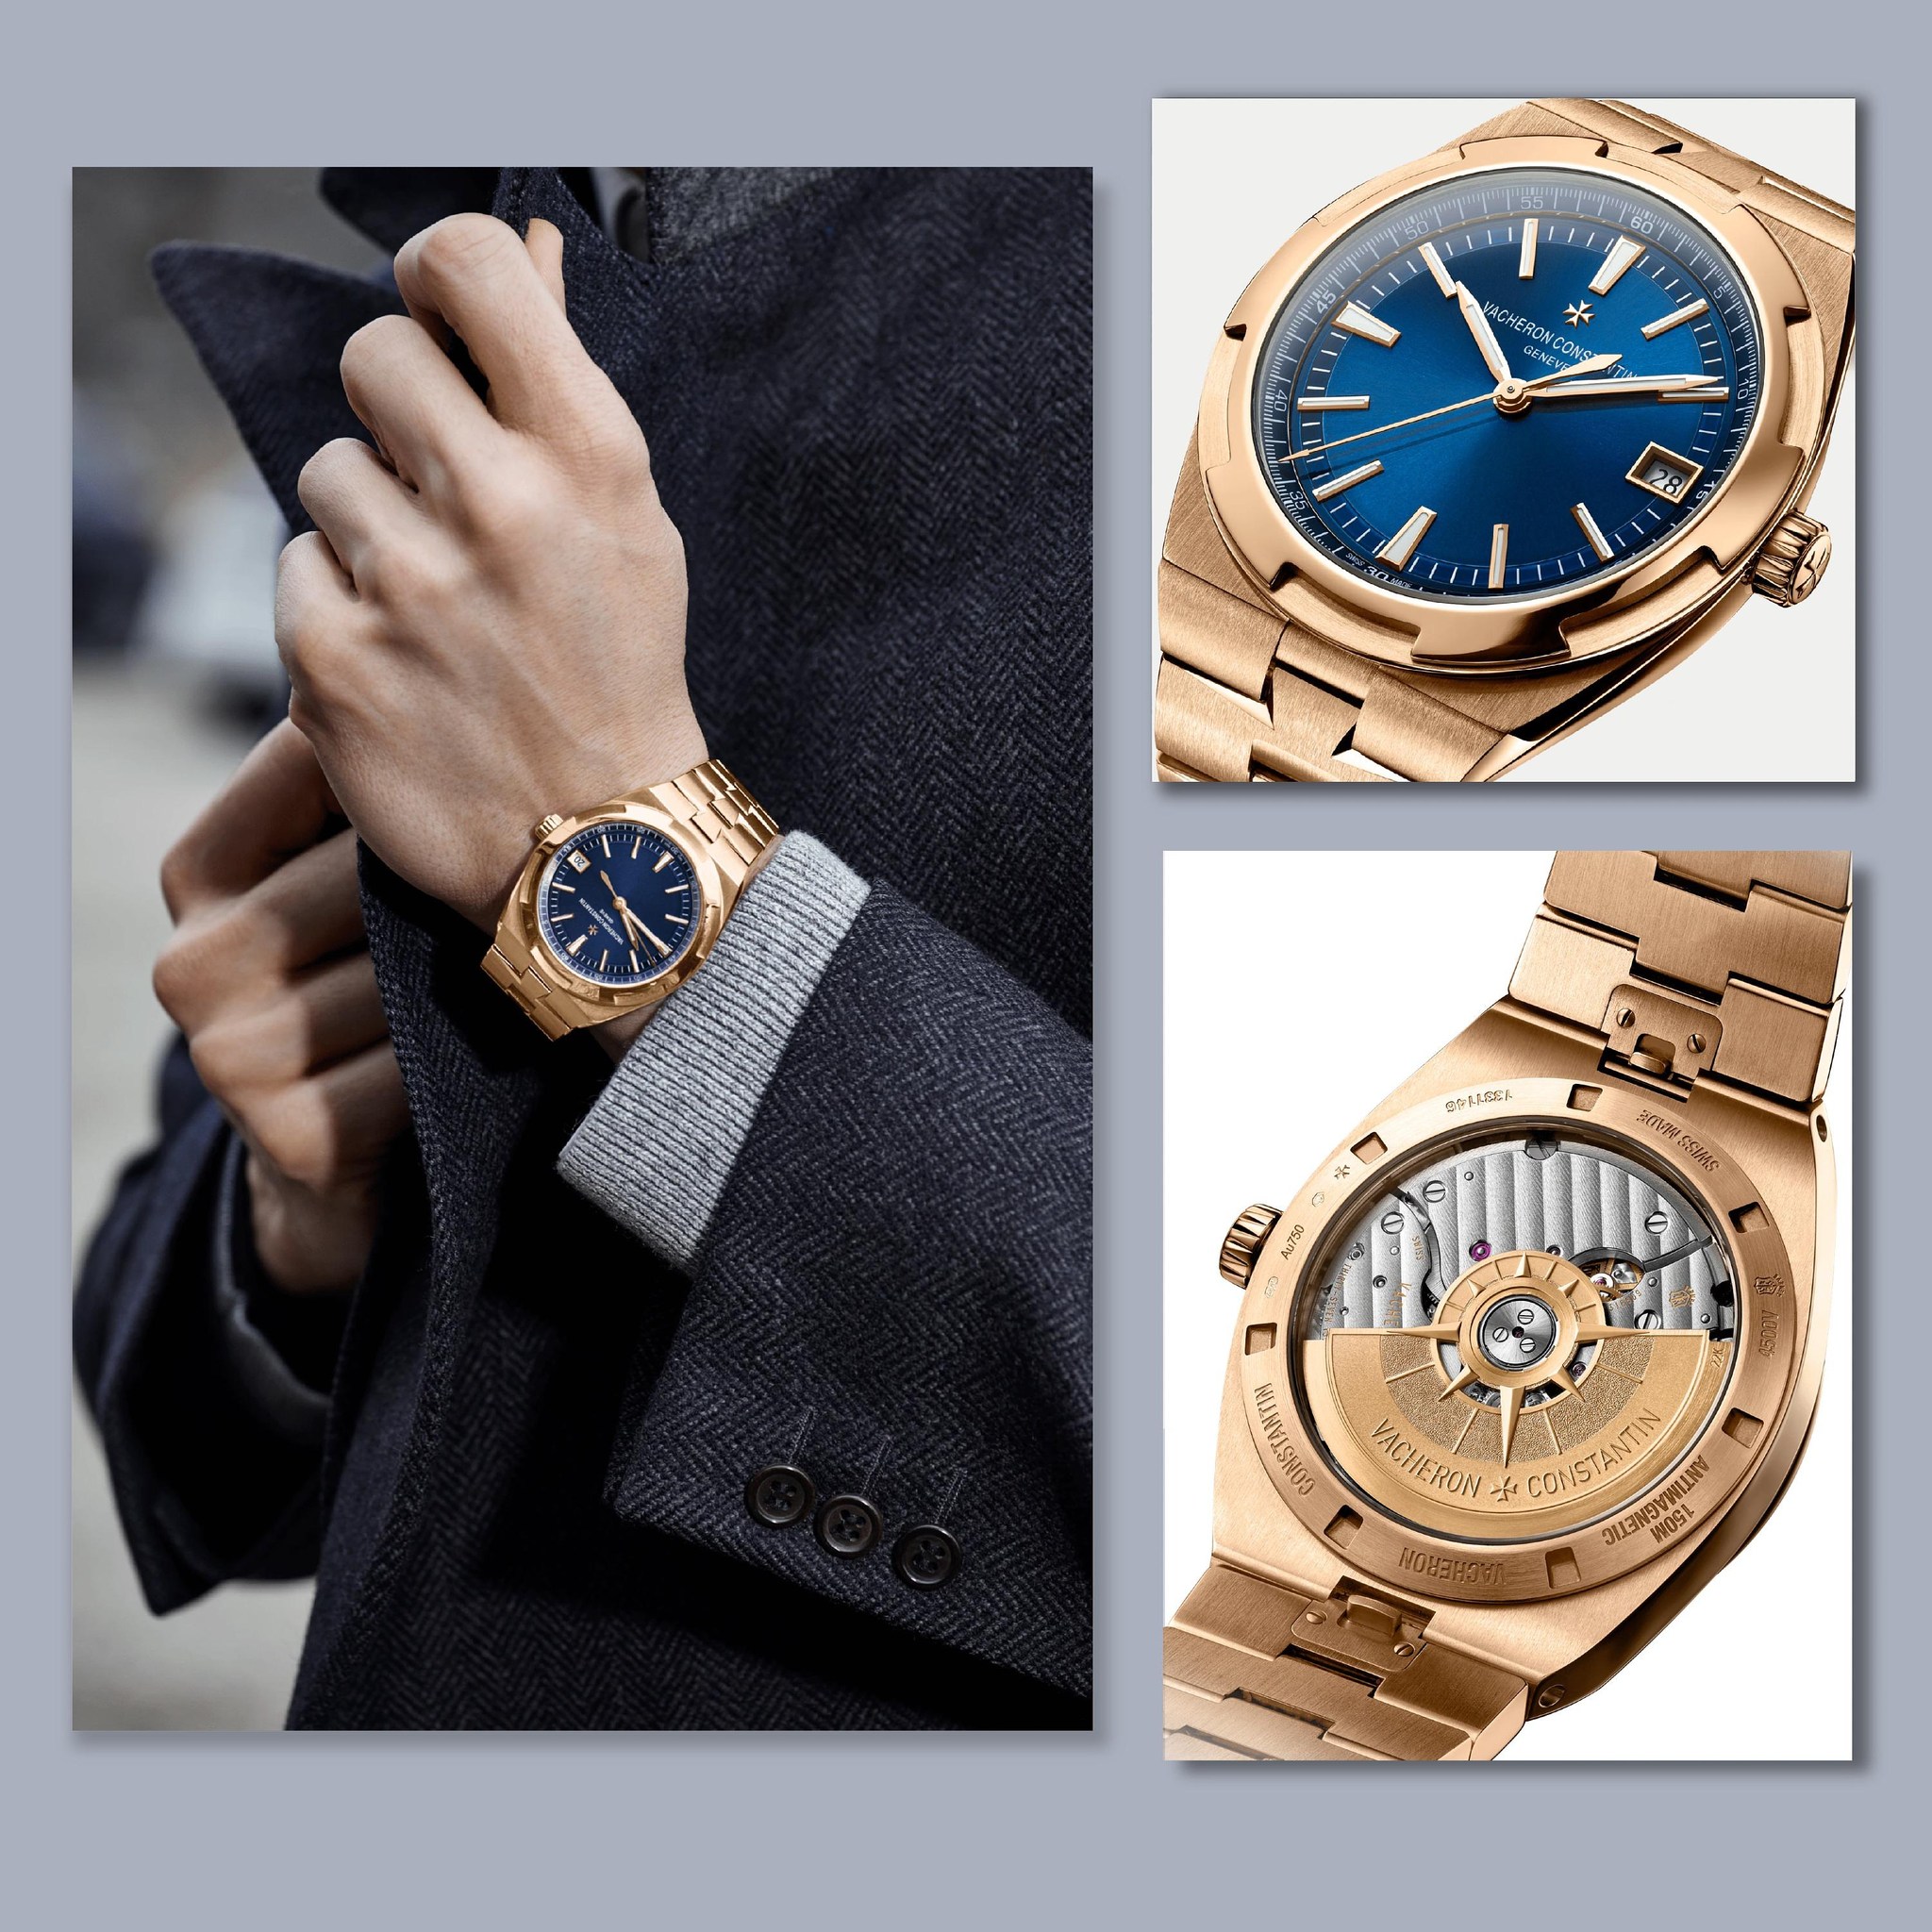 Mua đồng hồ Vacheron Constantin chính hãng tại Boss Luxury